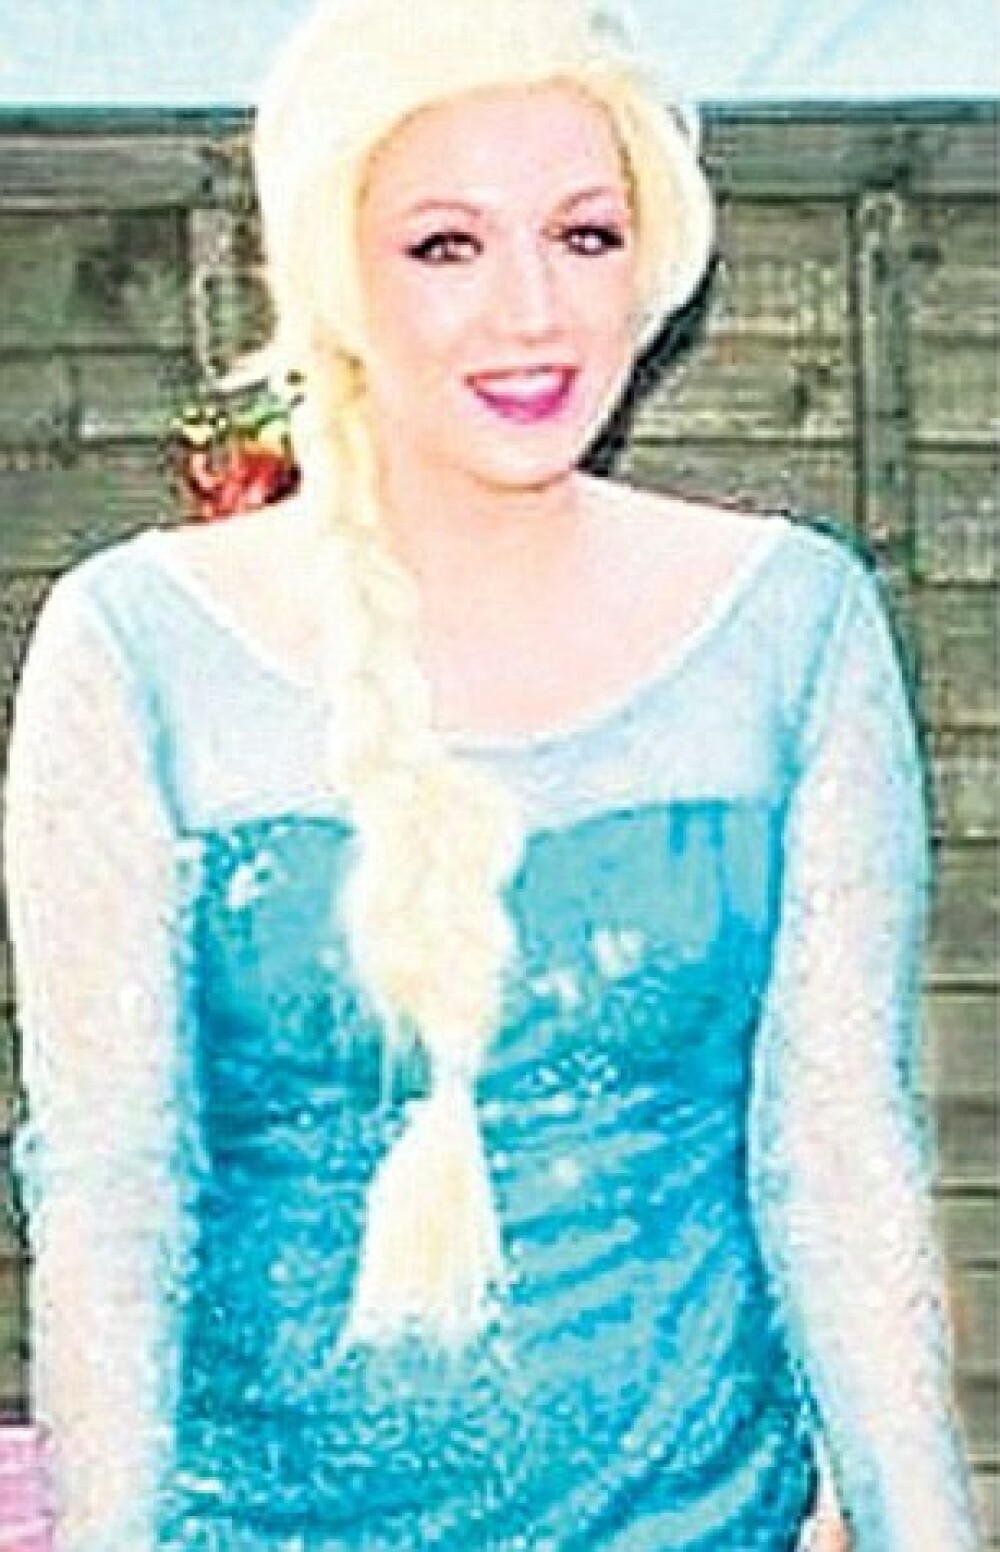 Viata dubla a unei tinere care ziua o intruchipeaza pe Elsa, la petreceri pentru copii. Cand s-a aflat, a izbucnit scandalul - Imaginea 1